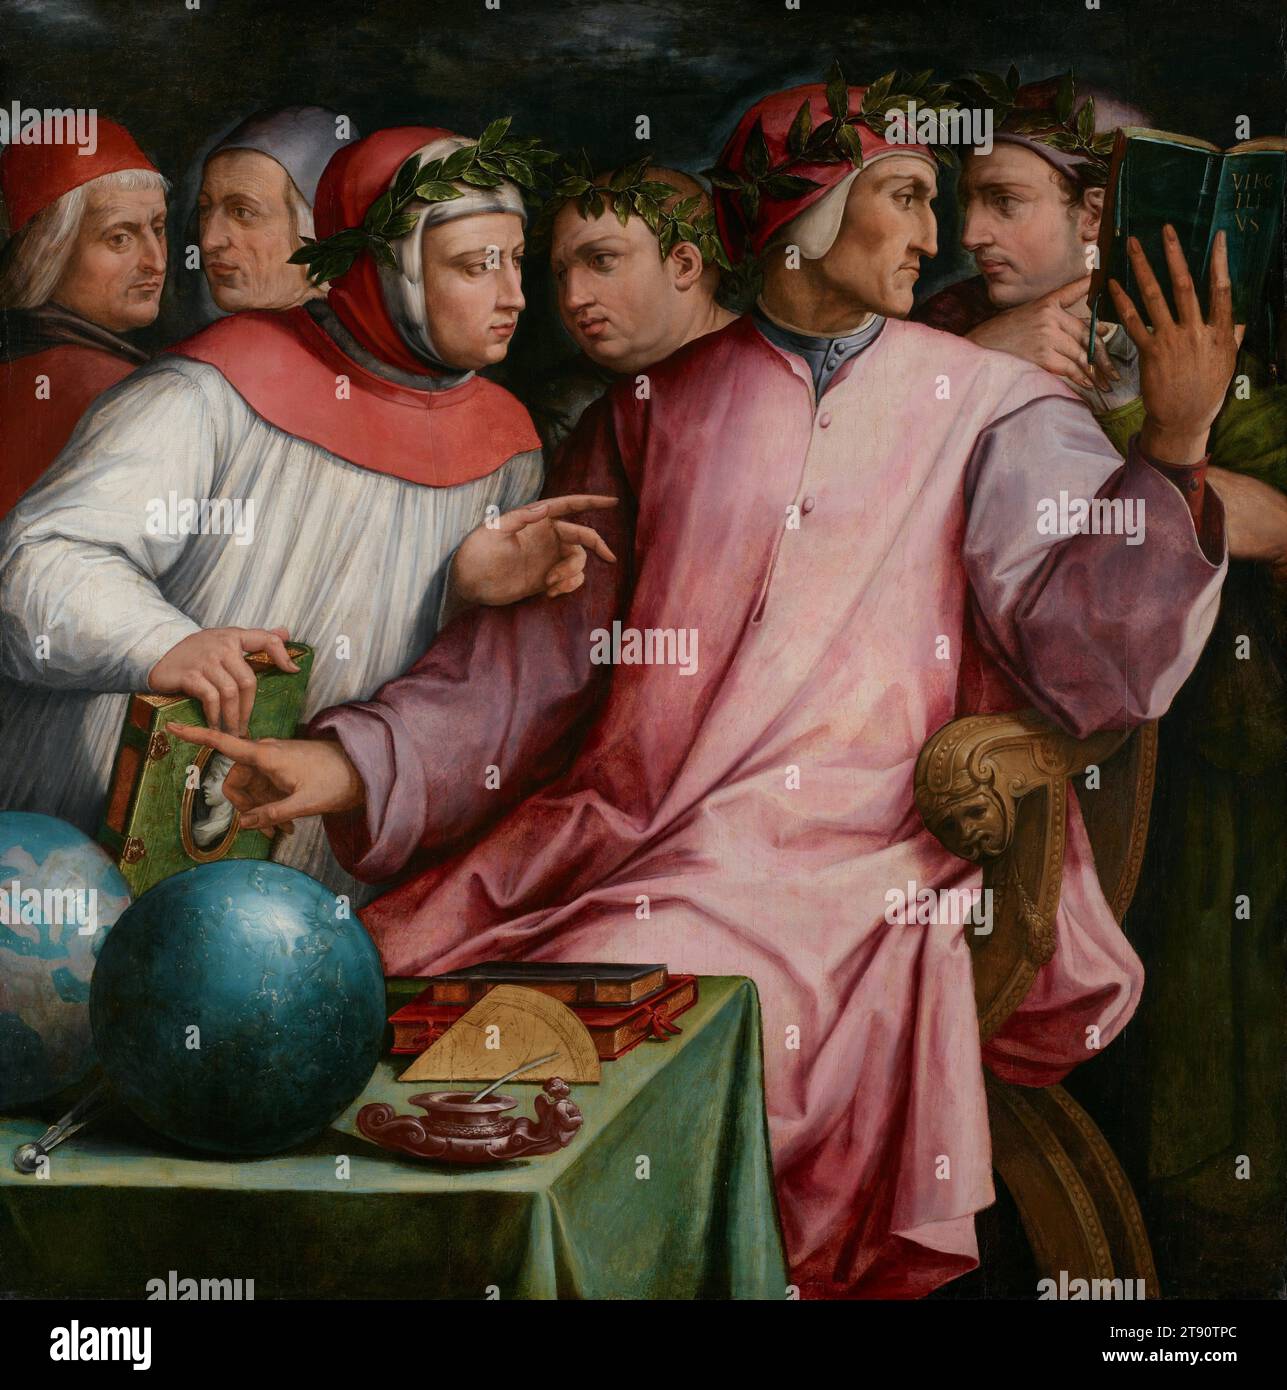 Six Poètes toscanes, 1543–44, Giorgio Vasari, italien (Florence), italien (Florence), 1511 à 1574, 52 x 51 5/8 po (132,08 x 131,13 cm) (toile)62 1/8 x 61 5/8 x 4 3/4 po (157,8 x 156,53 x 12,07 cm) (cadre extérieur), huile sur panneau, Italie, 16e siècle, ce portrait de groupe de six poètes et écrivains toscans distingués célèbre l'âge d'or de la littérature italienne des 14e et 15e siècles et le rôle de ces individus dans l'élévation de la littérature et l'ennoblissement de la langue Banque D'Images